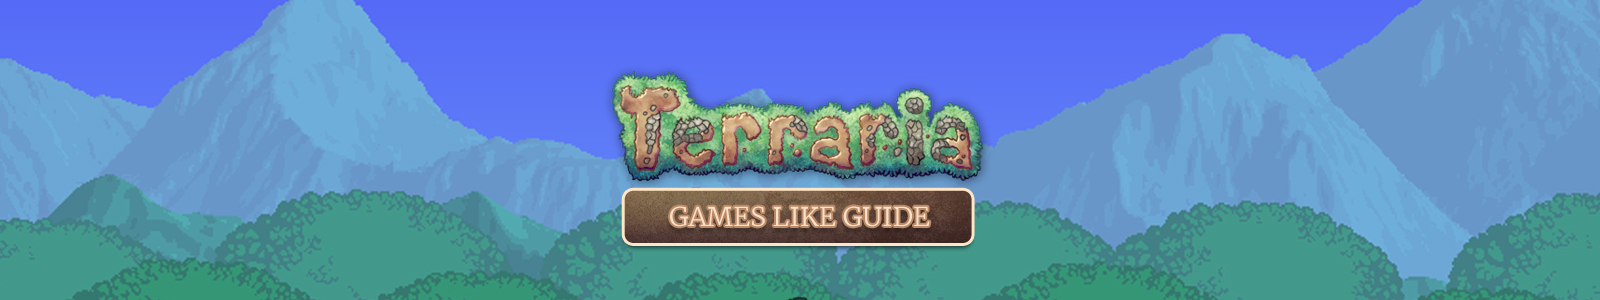 Terraria Spiele wie Anleitung